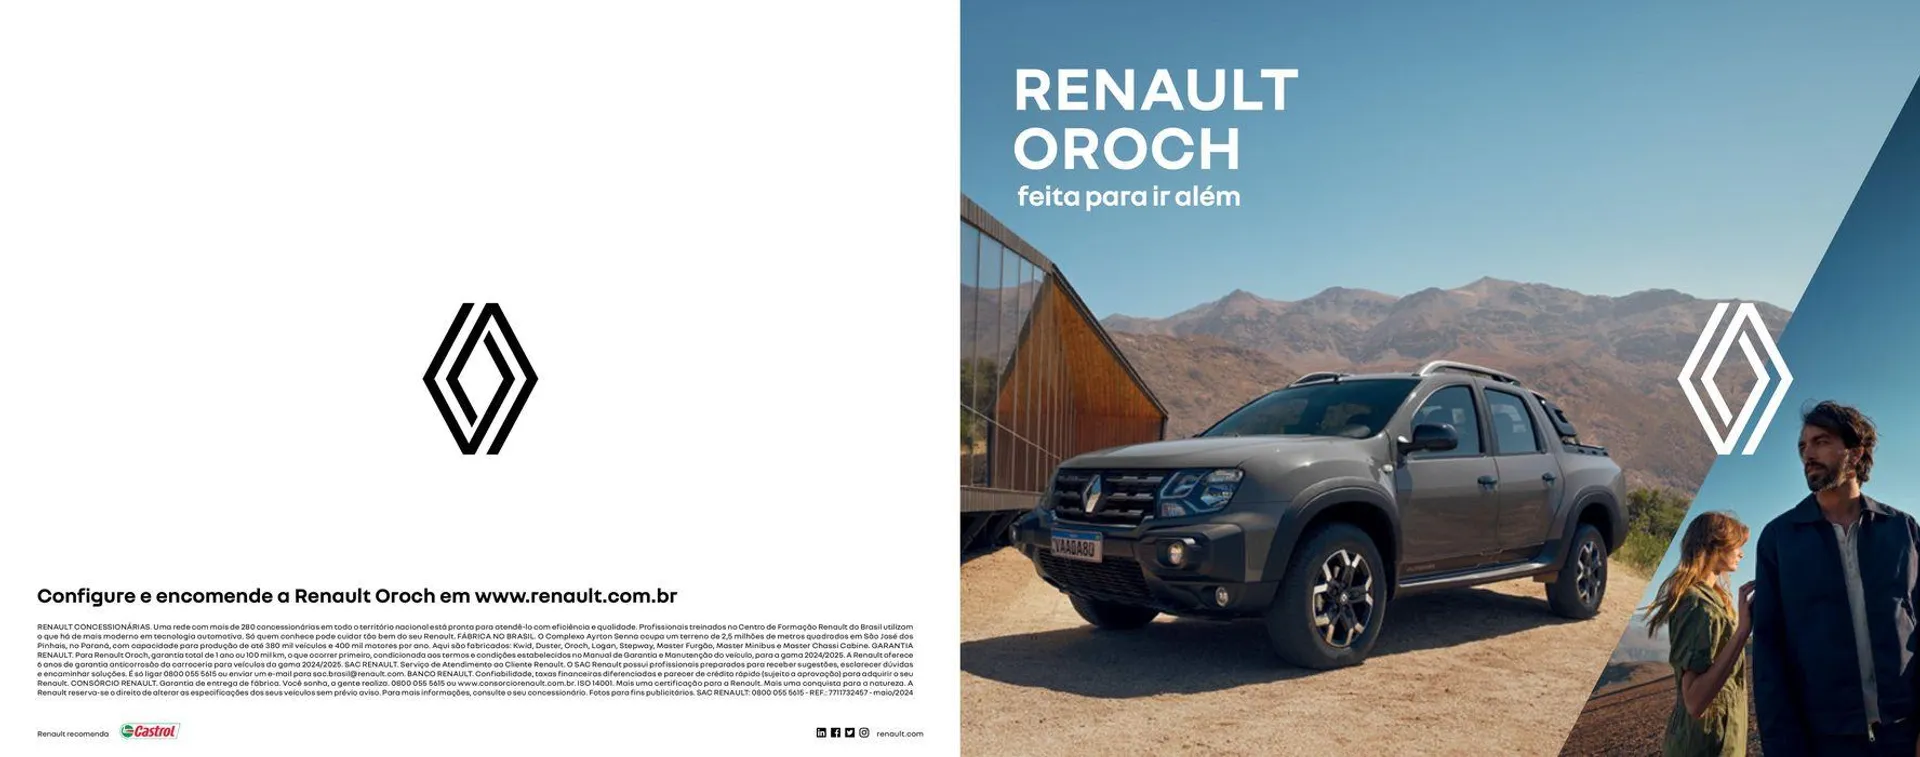 Renault Oroch - 1